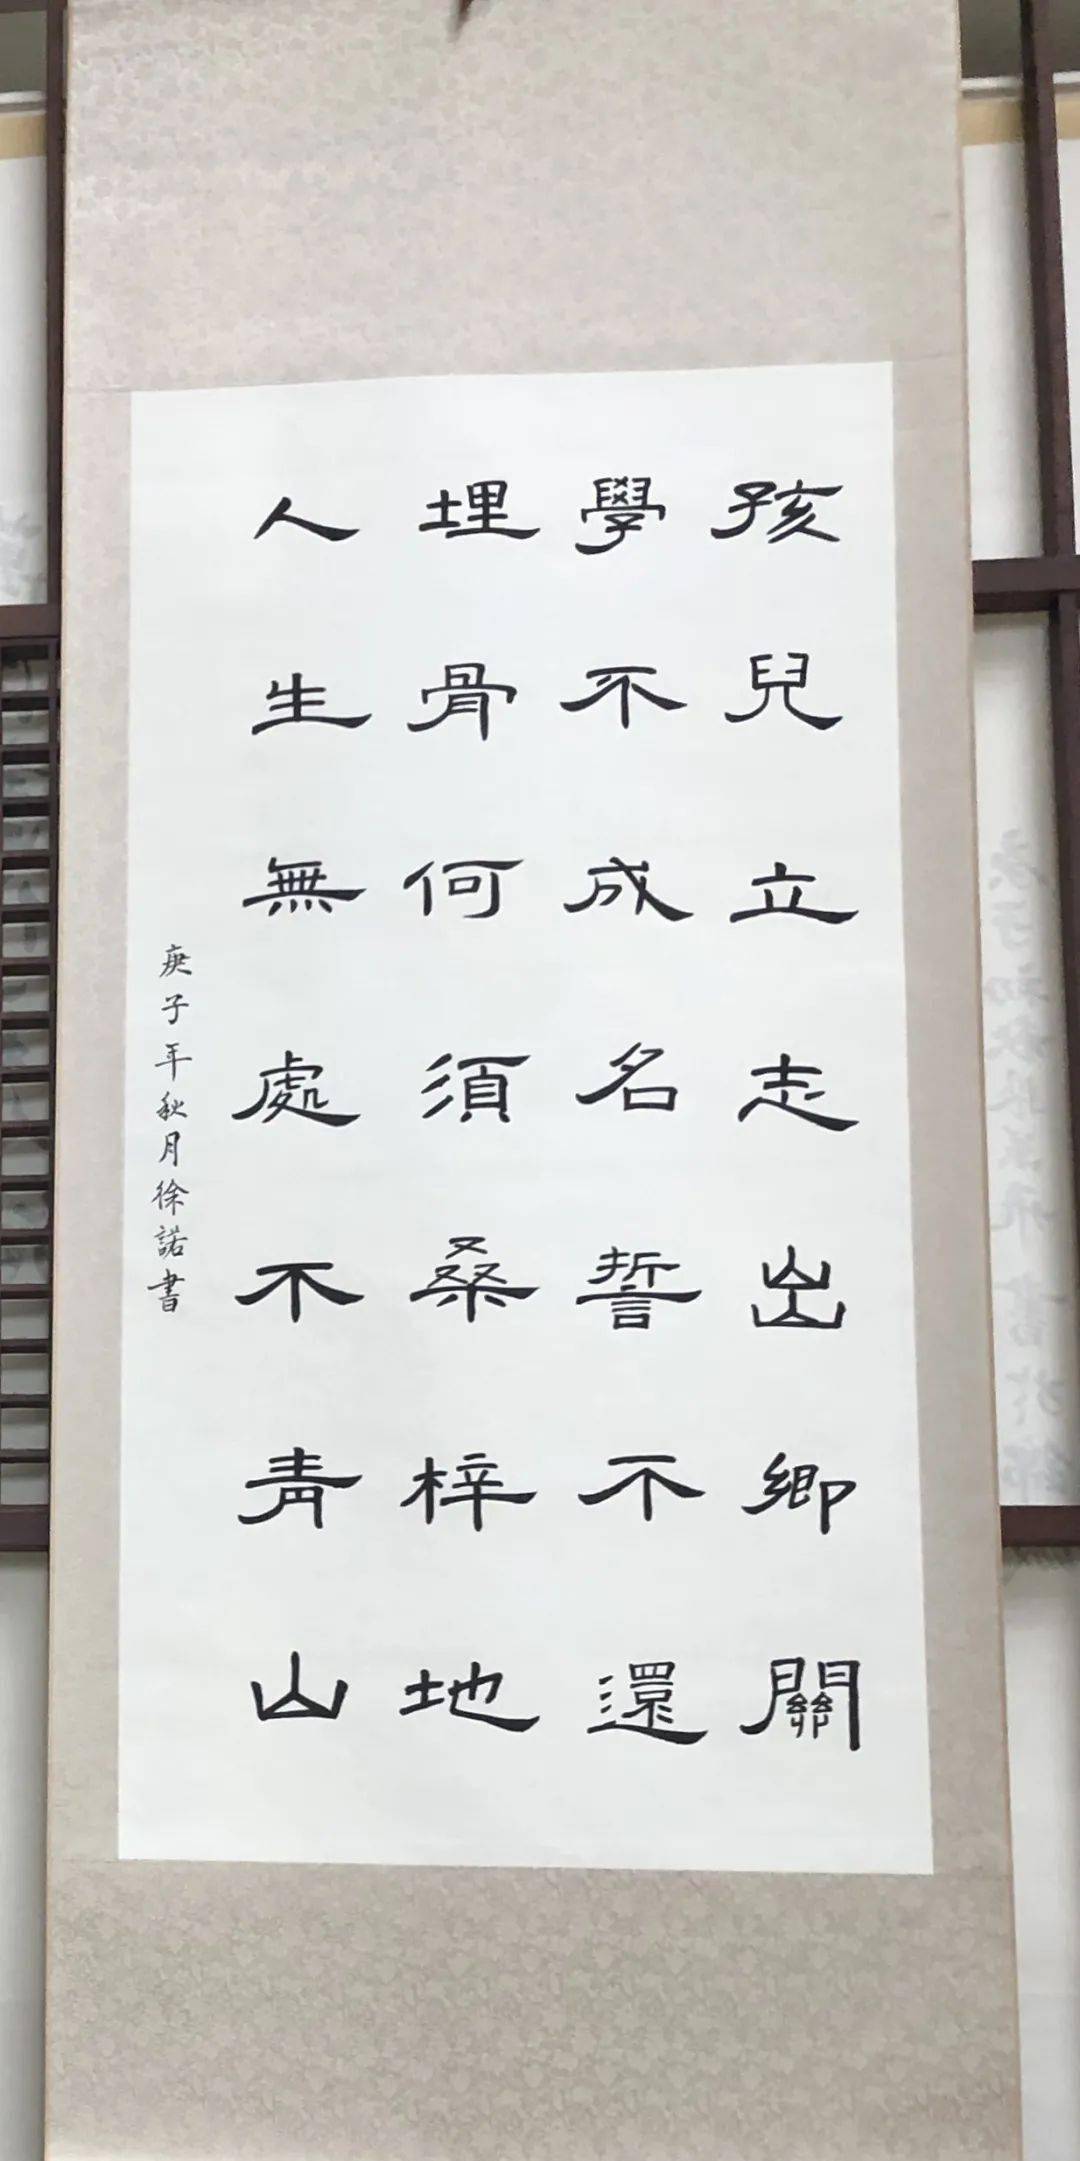 小黑板61校园文化上海政法学院第十届翰墨书香书画大赛作品展